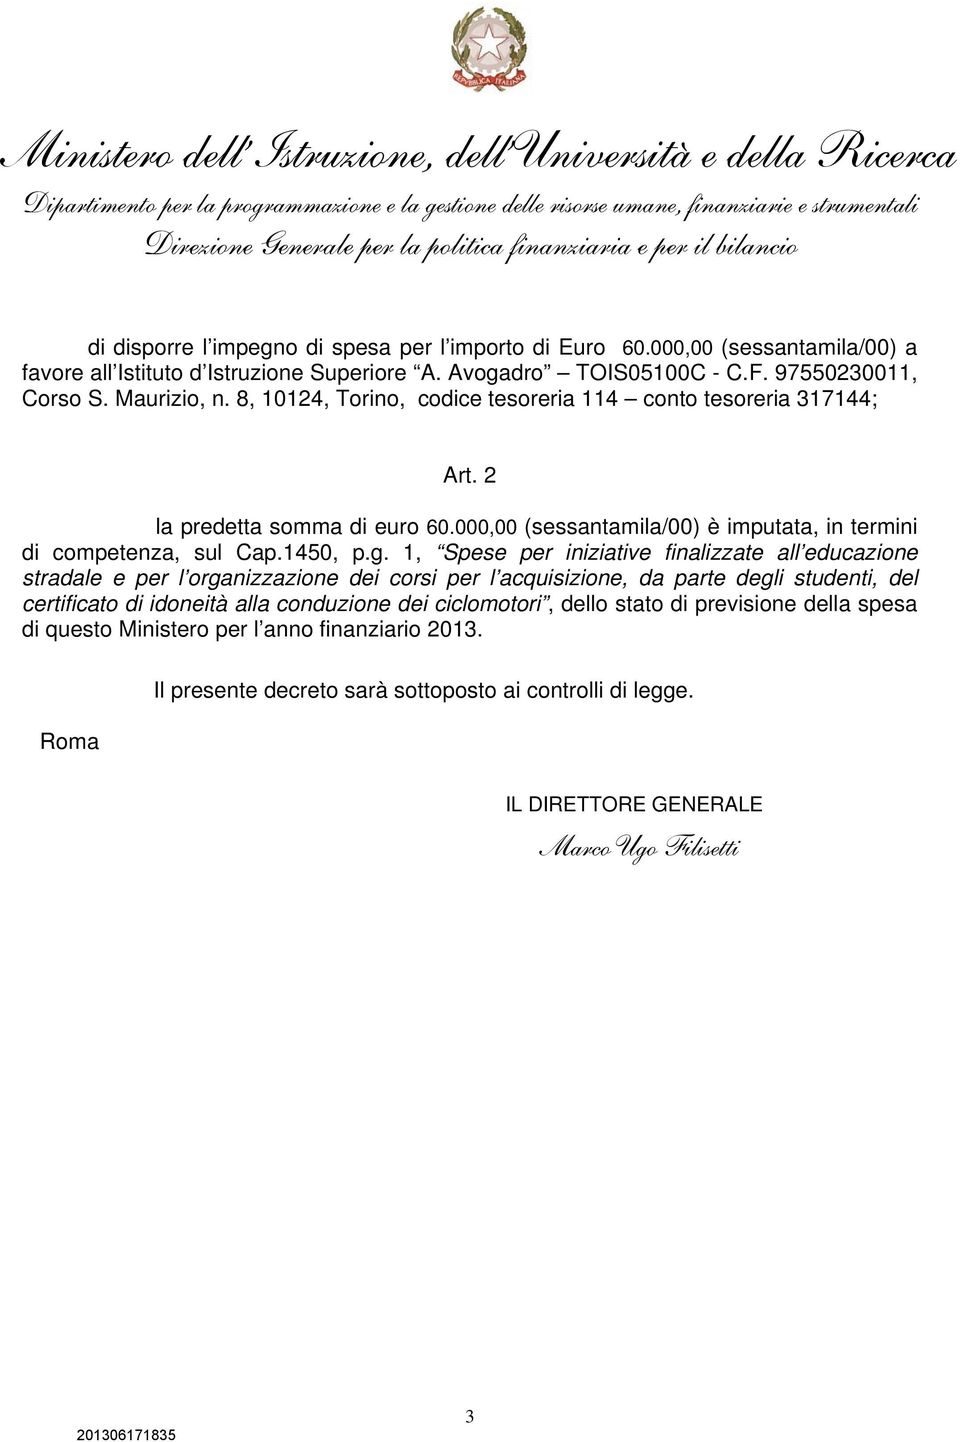 97550230011, Corso S. Maurizio, n. 8, 10124, Torino, codice tesoreria 114 conto tesoreria 317144; Art. 2 la predetta somma di euro 60.